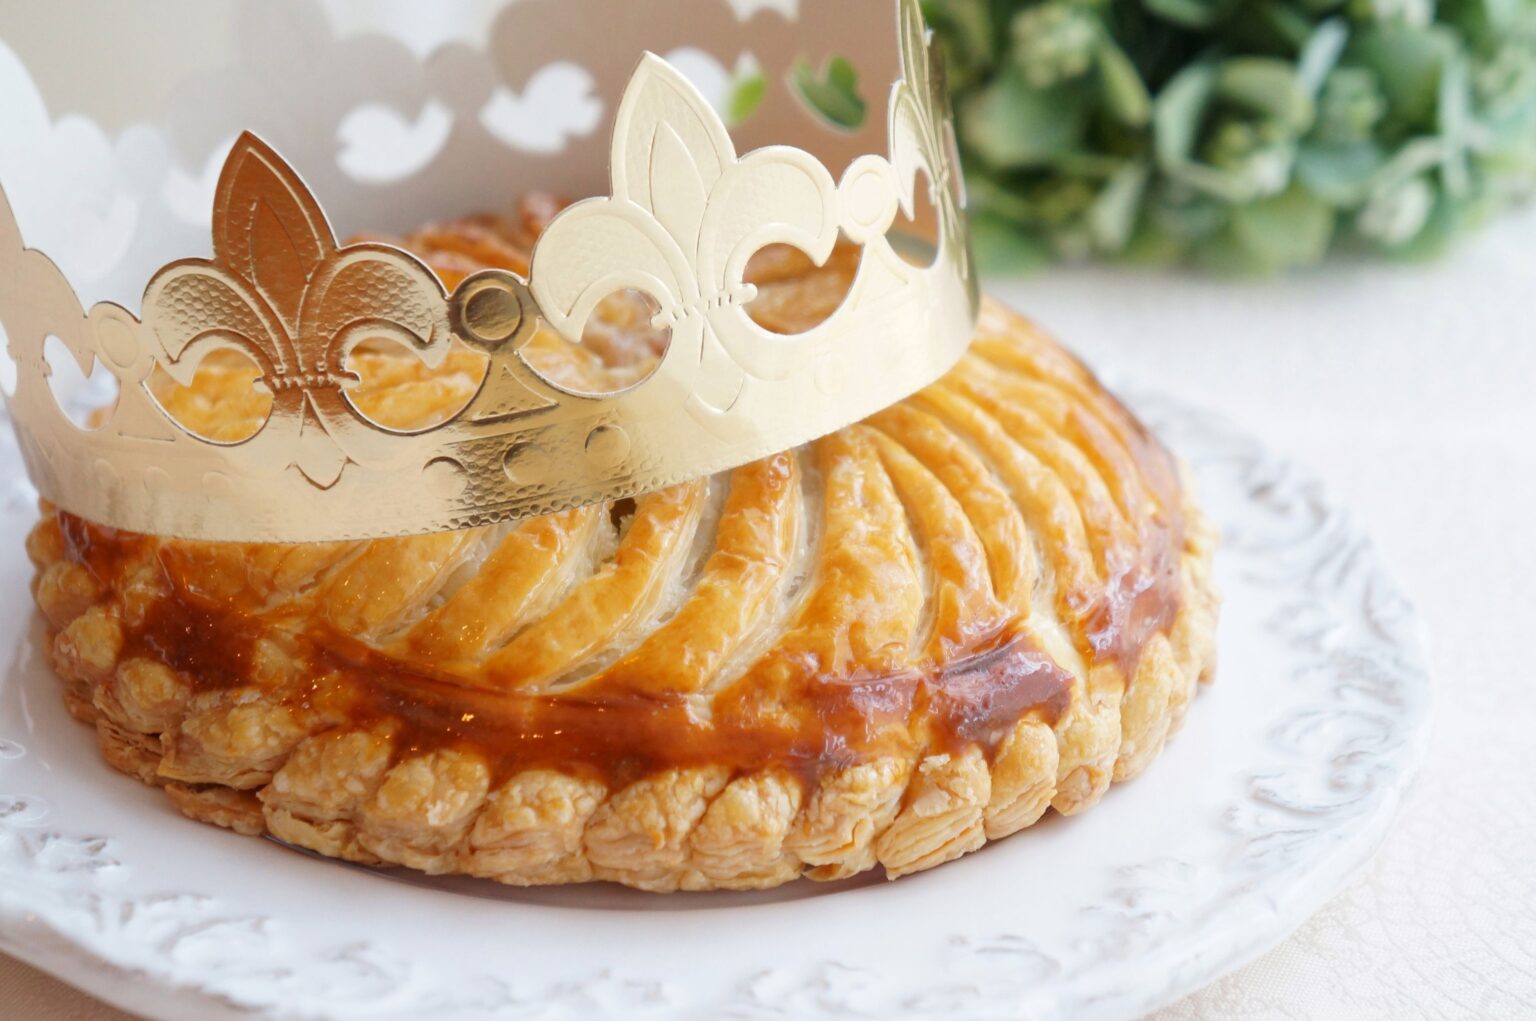 La torta dei re: una ricetta francese perfetta per le feste natalizie!